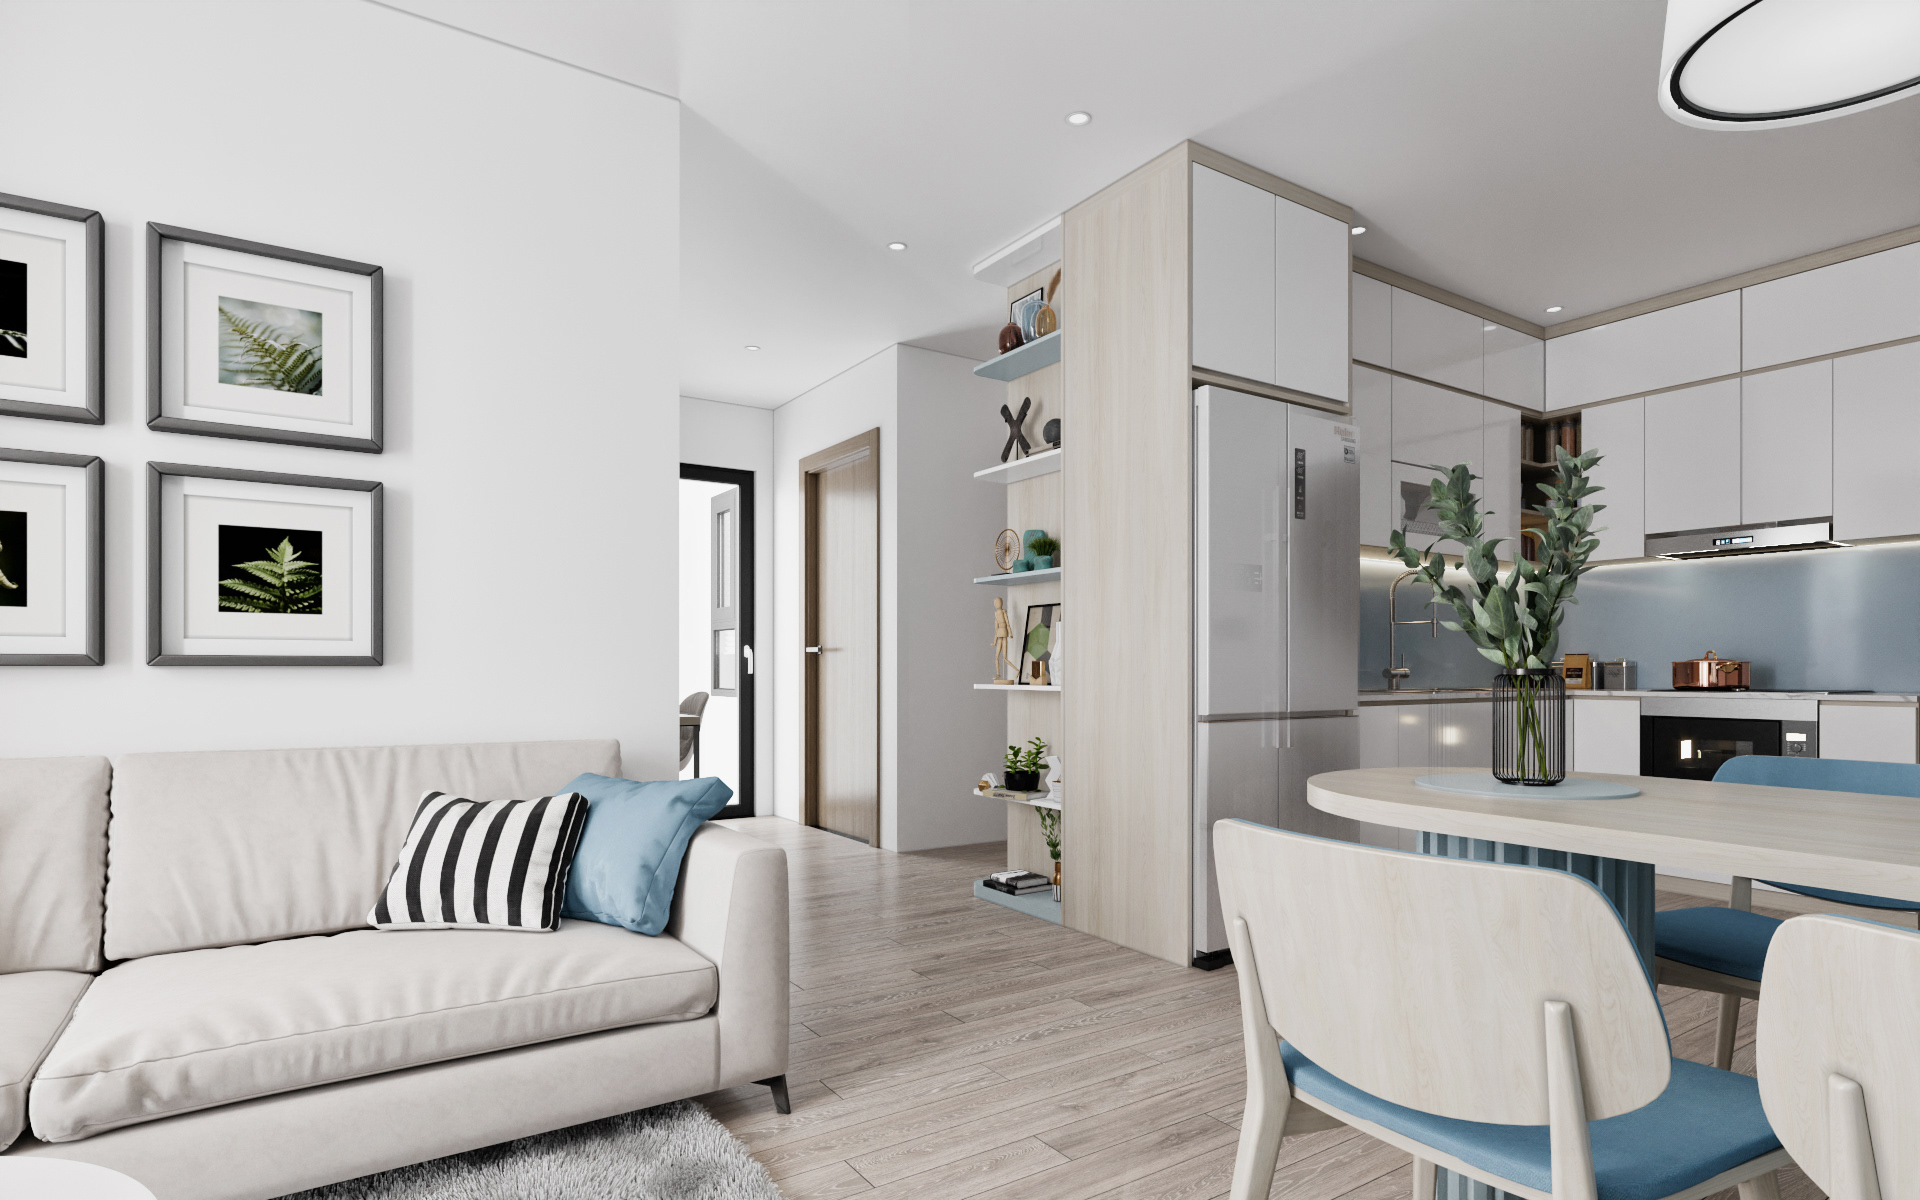  thiết kế nội thất chung cư vinhomes smart city trọn gói 100tr tặng giá bát cố định